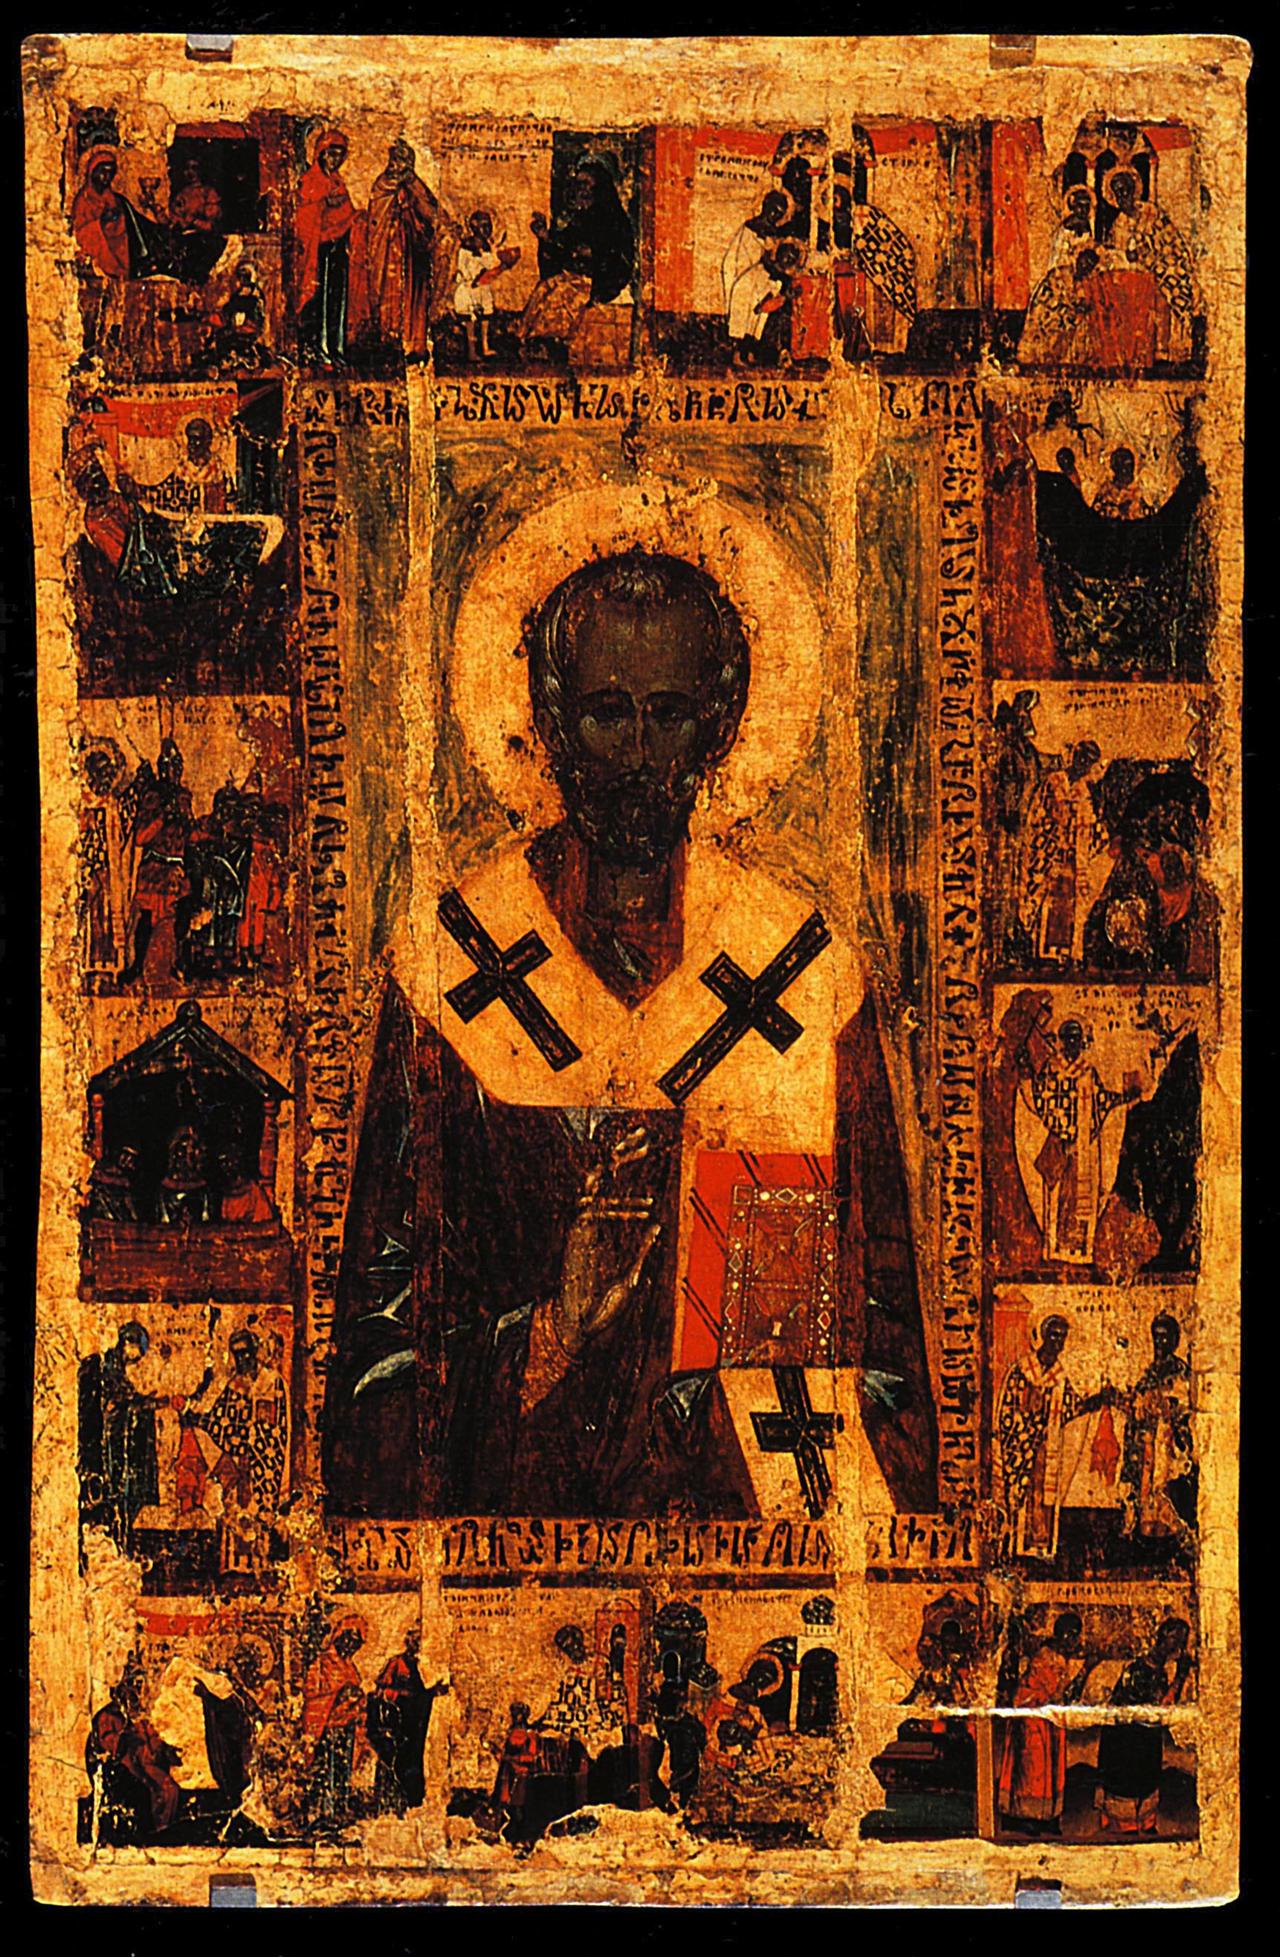 Stare ikony rosyjskie - 1401-1500  Saint Nicolas Thaumaturge avec des Scnes de sa vie  Moscou, Galerie Tretiakov.jpg